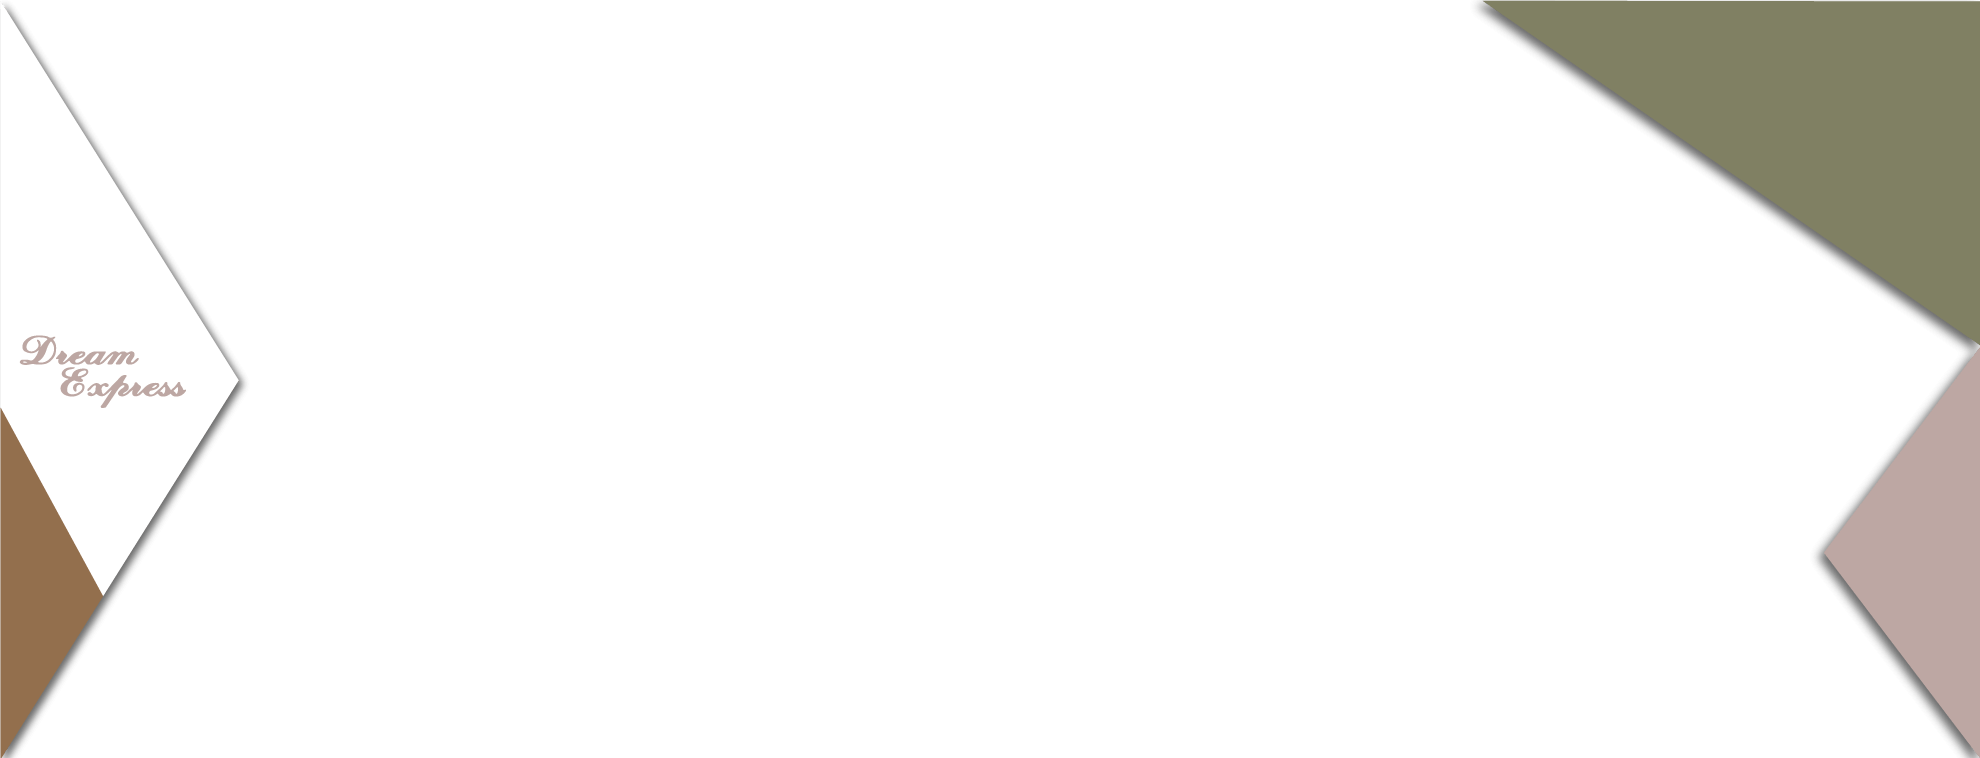 ドリームエキスプレスのヘッダー画像